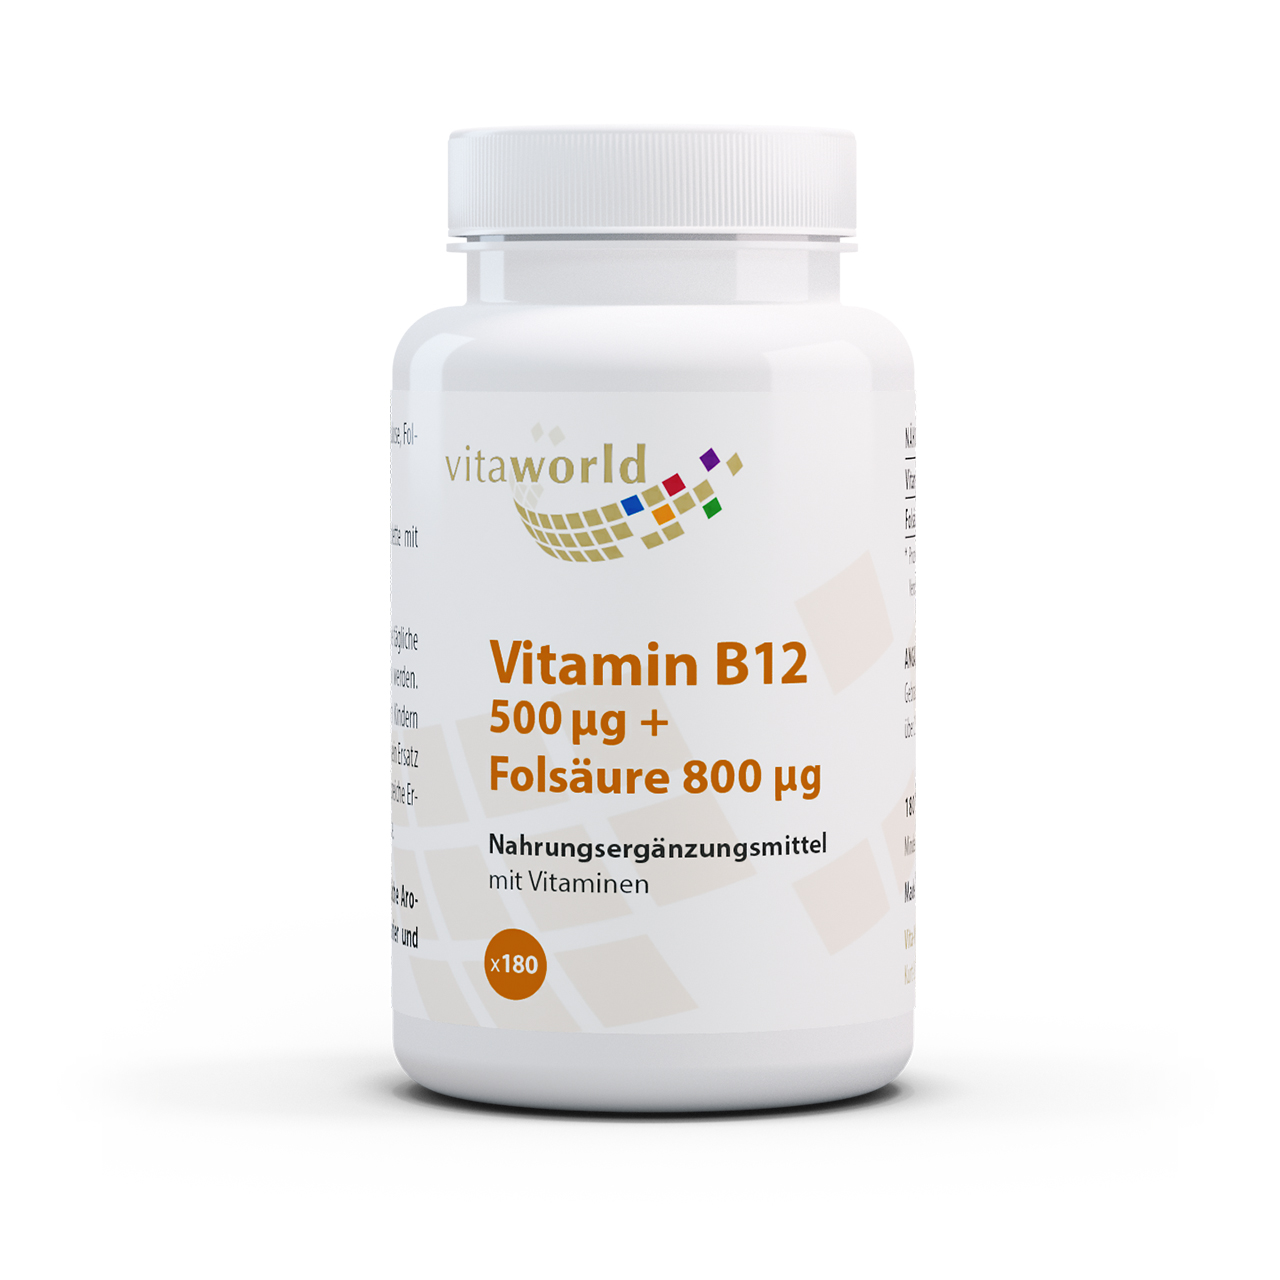 Vitaworld Vitamin B12 500 µg + Folsäure 800 µg | 180 Tabletten | vegan | gluten- und laktosefrei